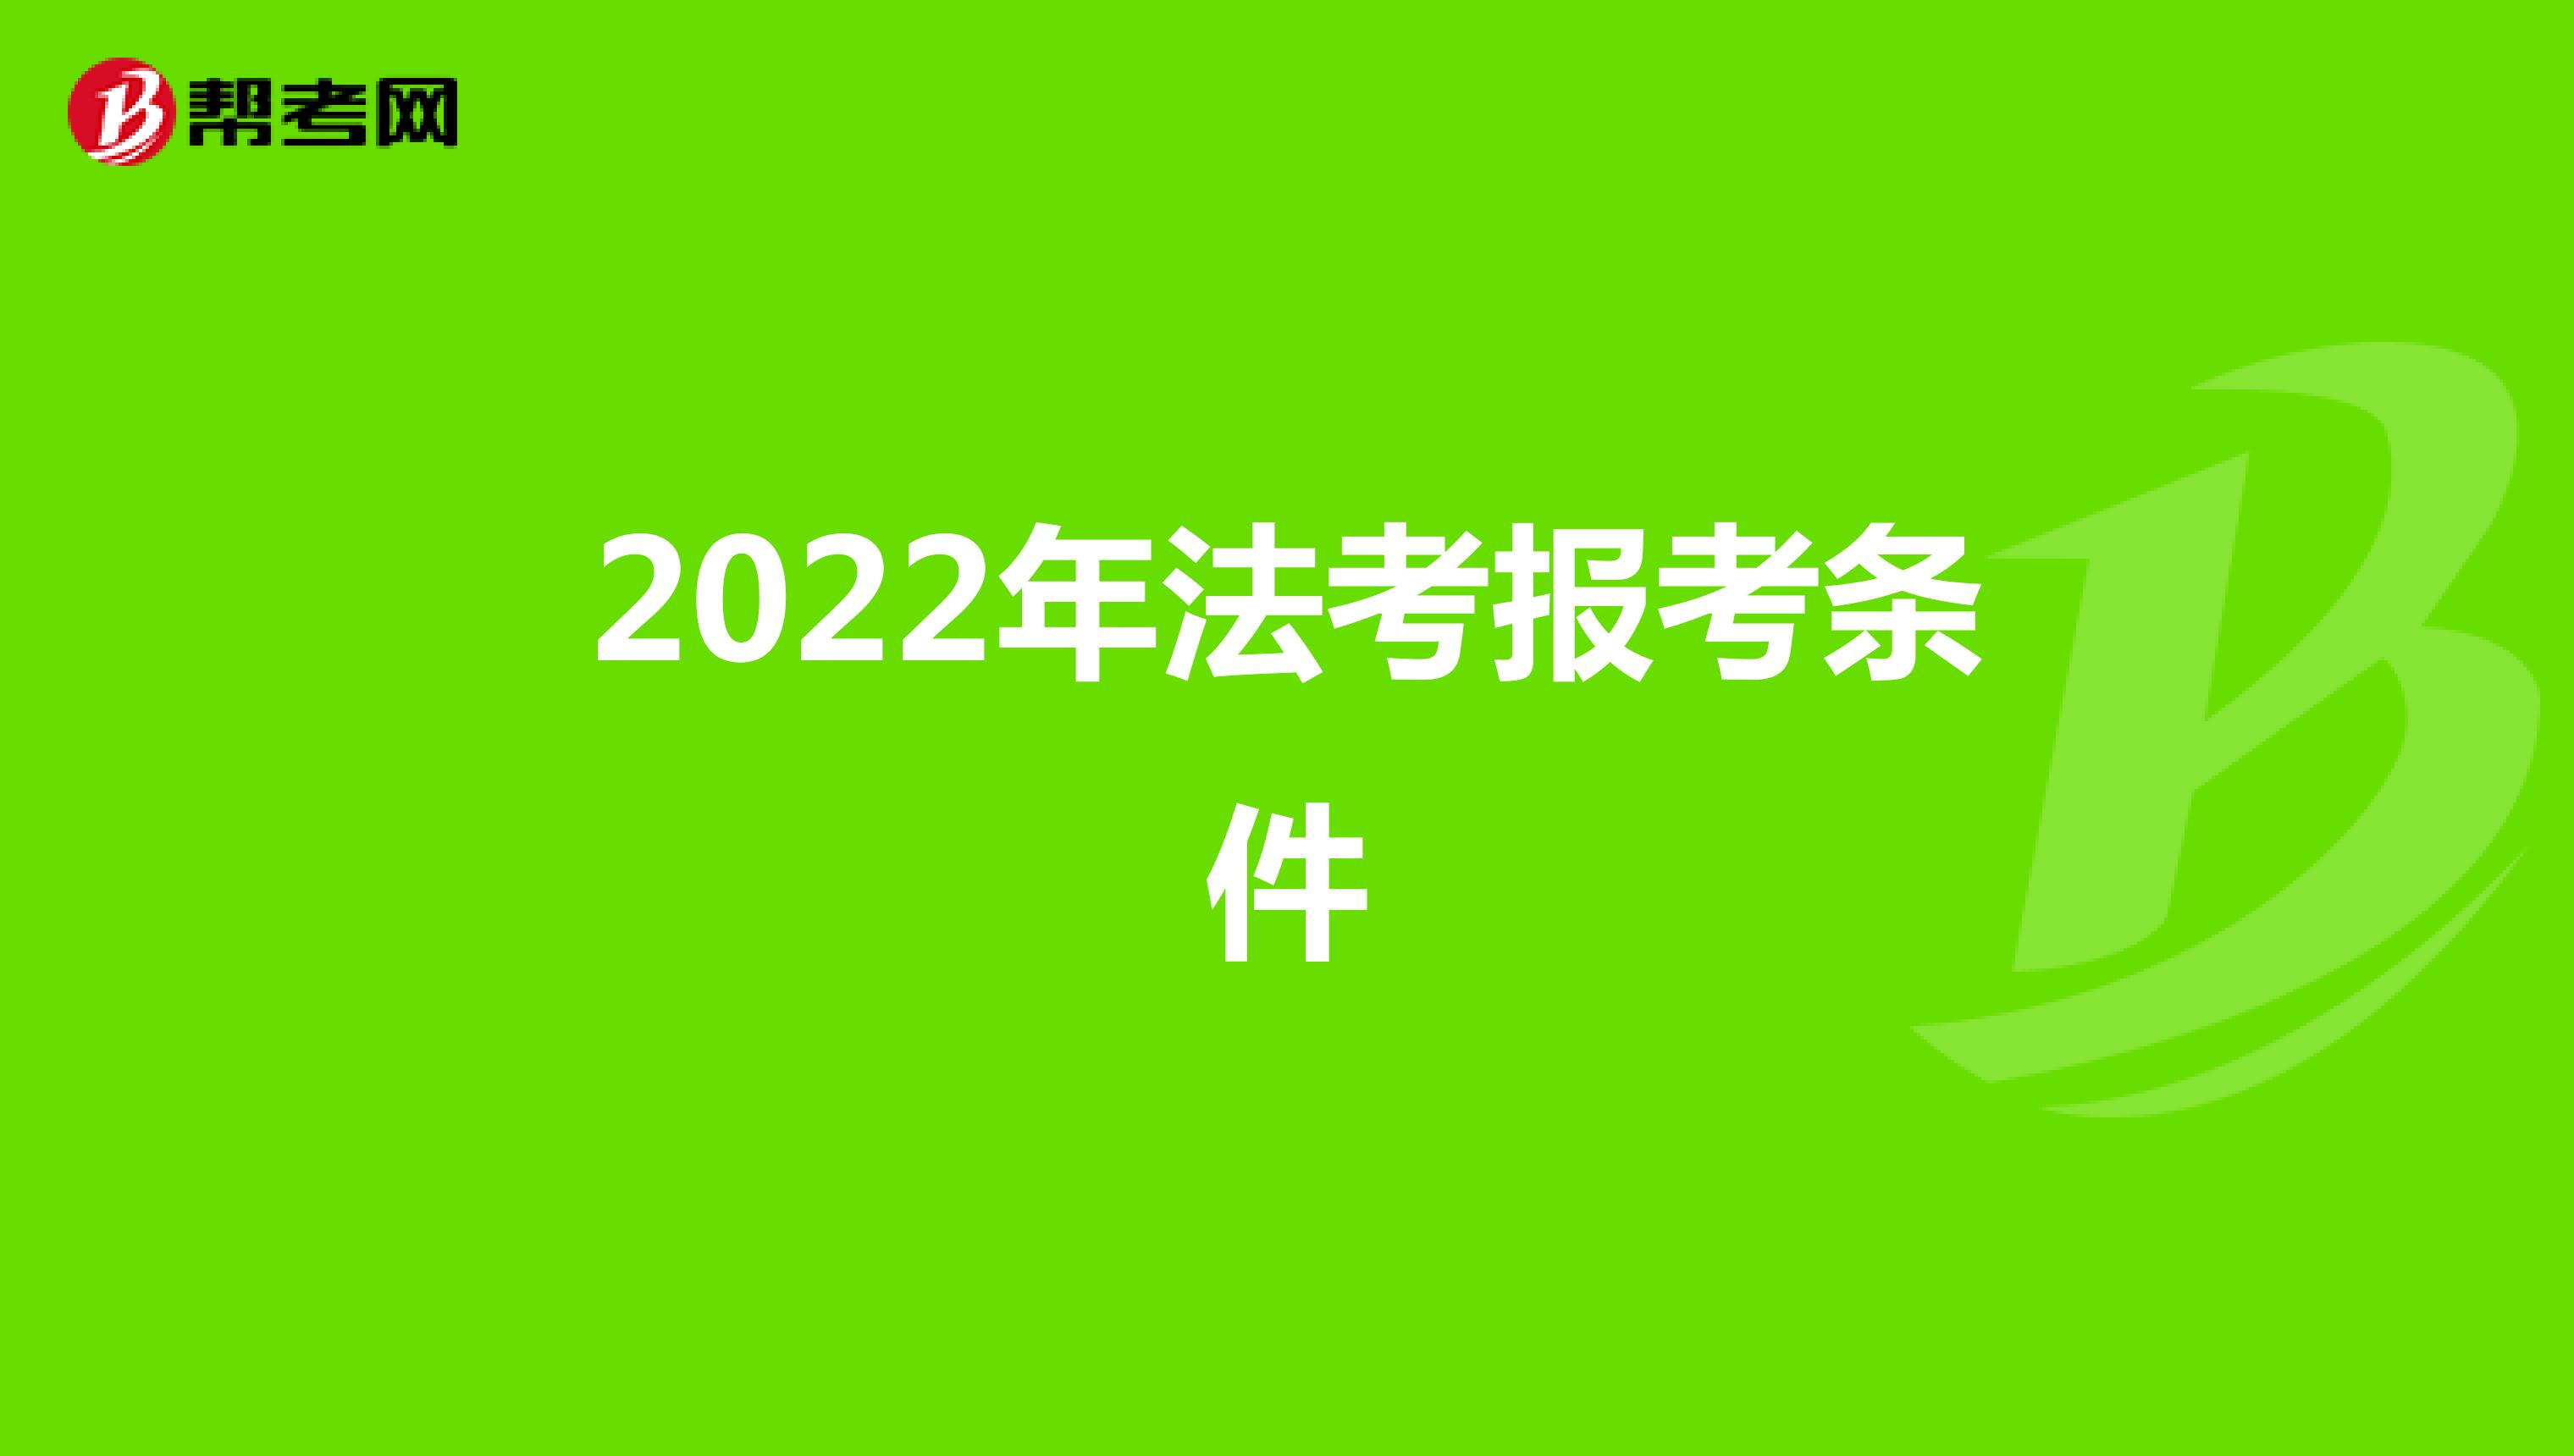 2022年法考报考条件